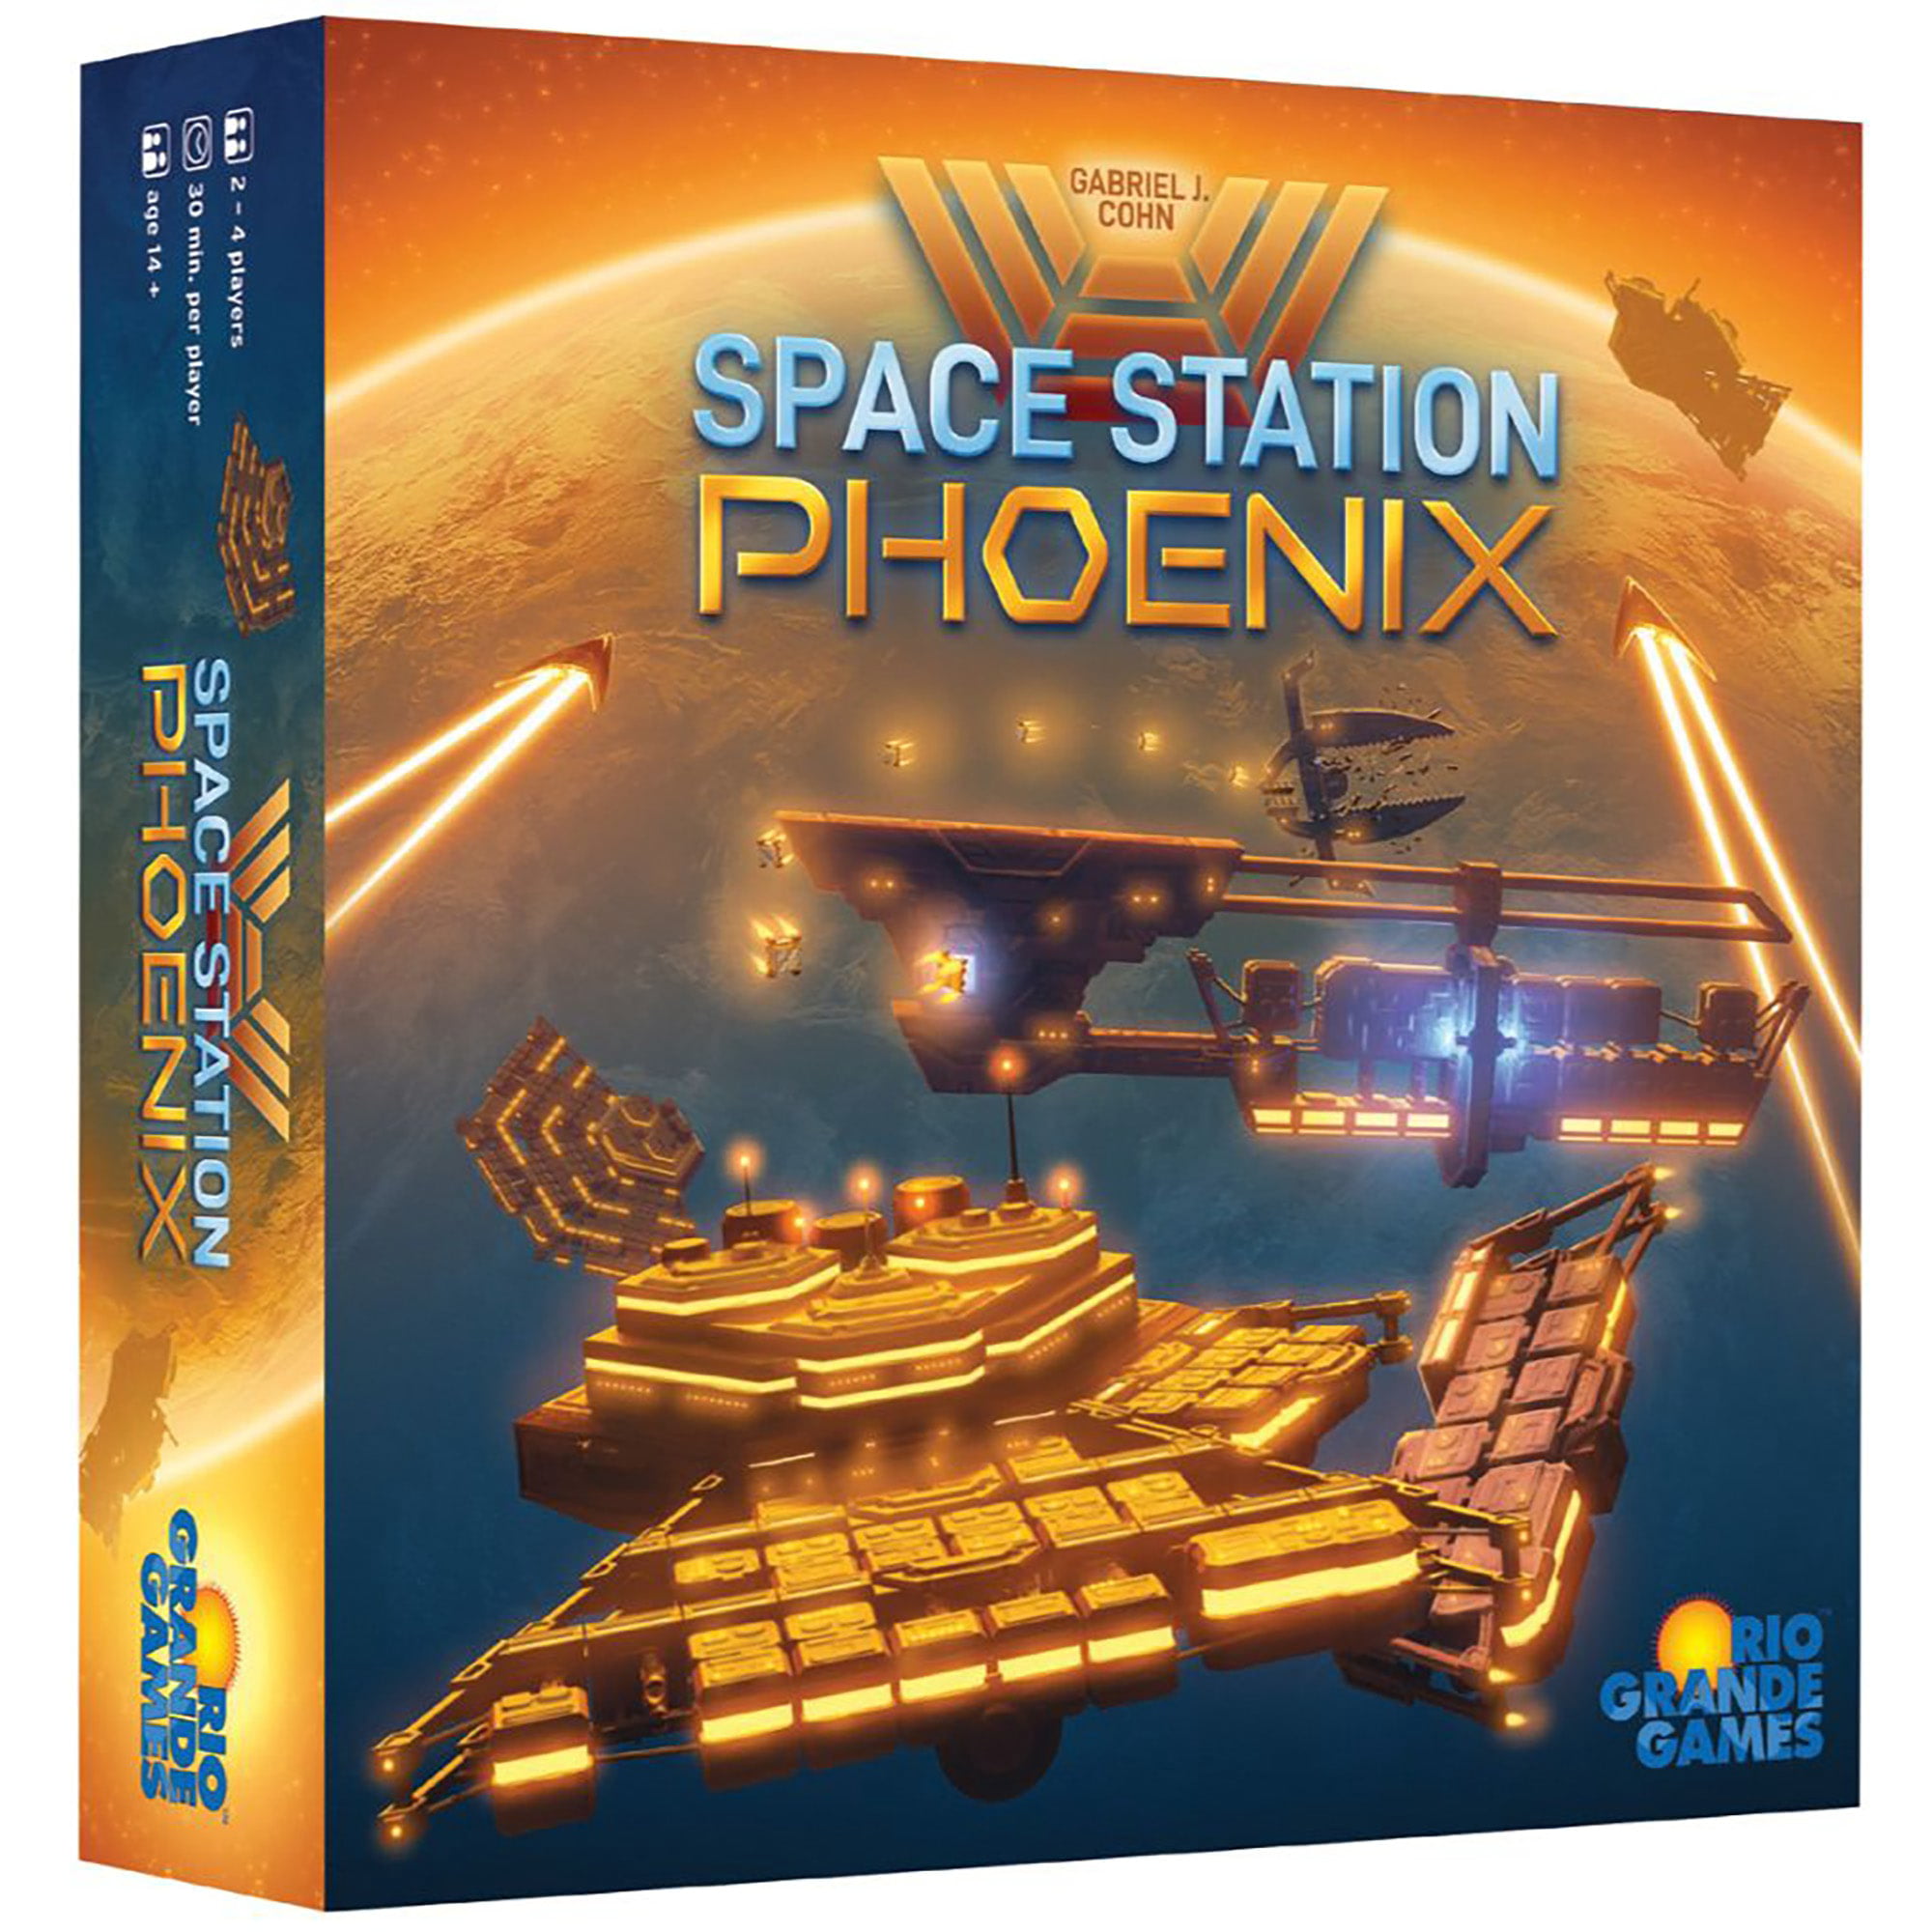 Rio Grande Games Space Station Phoenix - RIO Grande Games